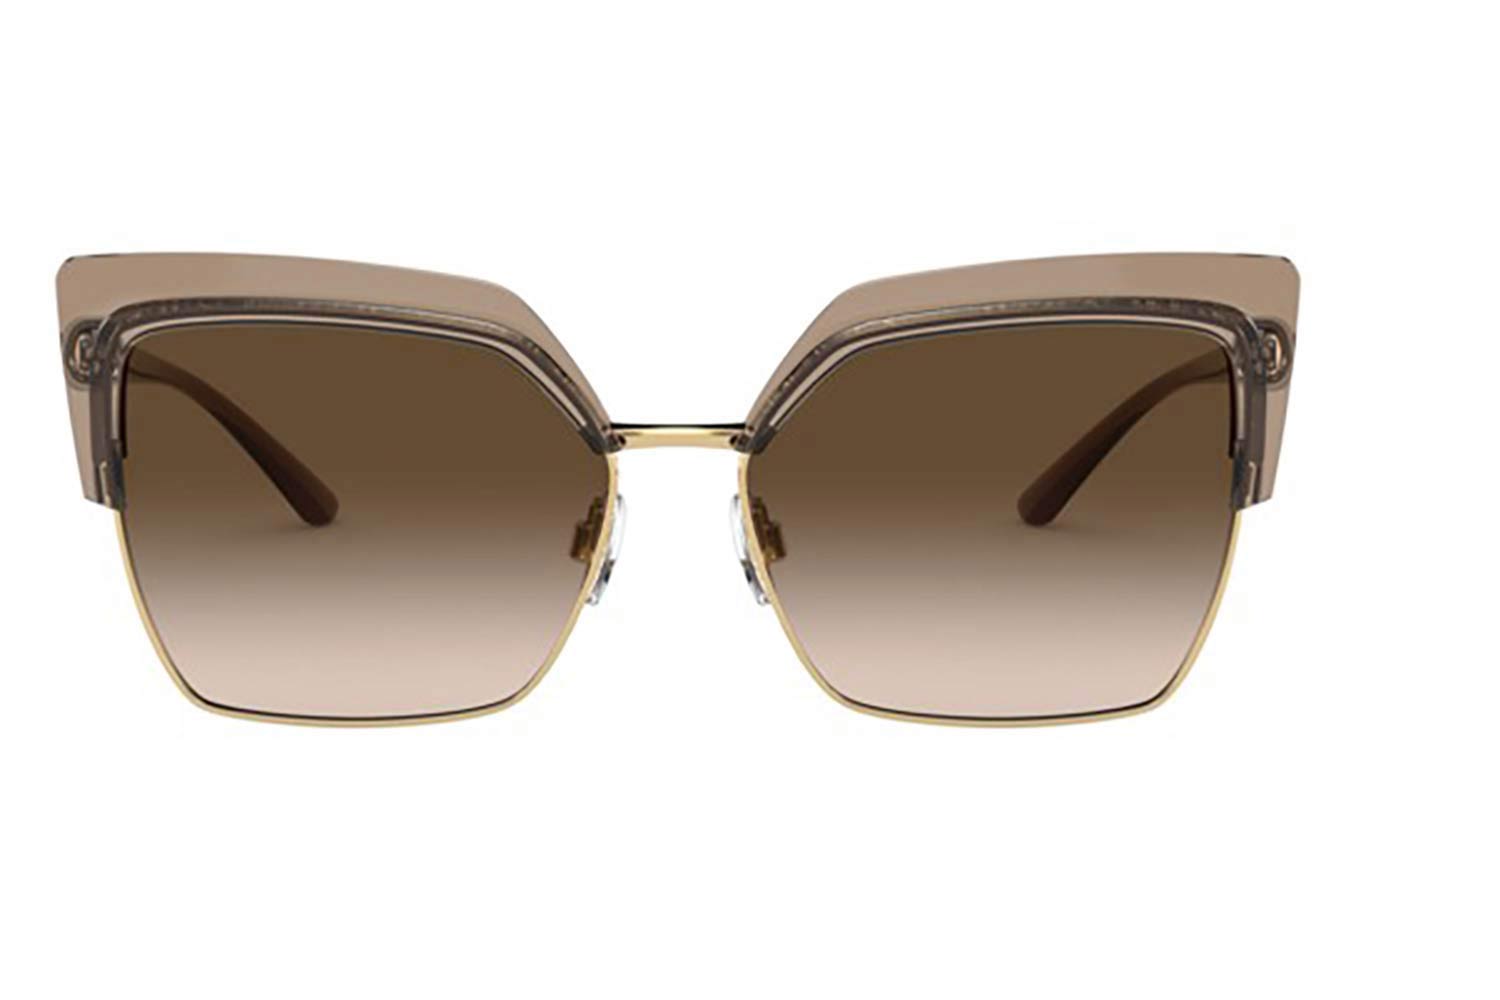 d&g sunglasses 2020